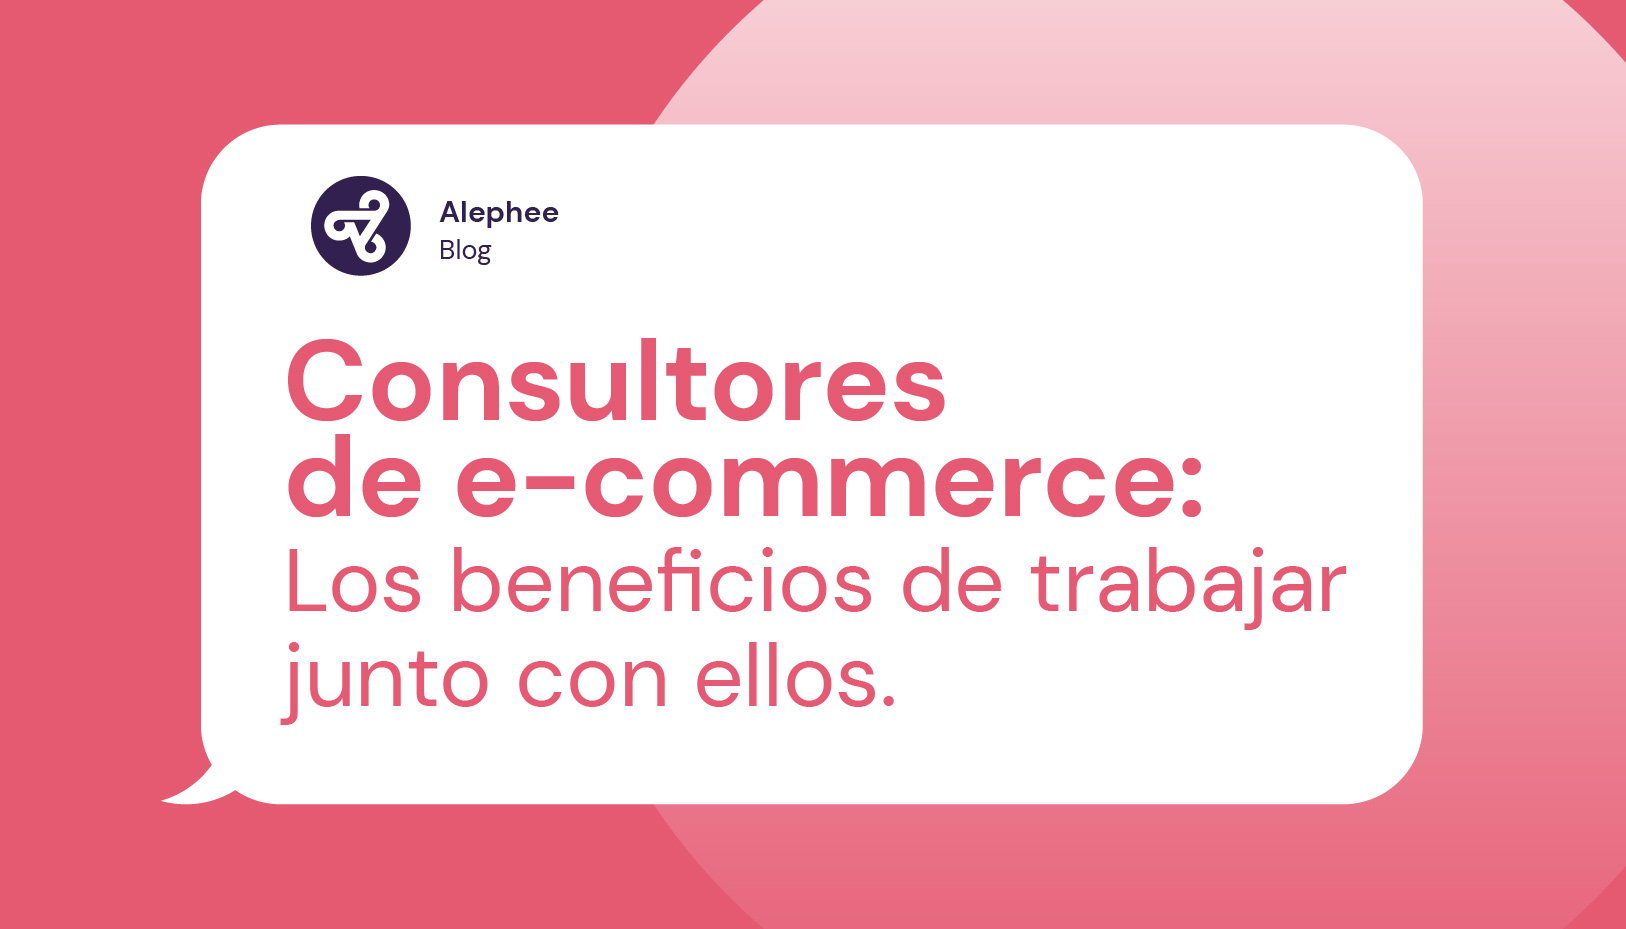 Consultores de e-commerce: Los beneficios de trabajar junto con ellos.